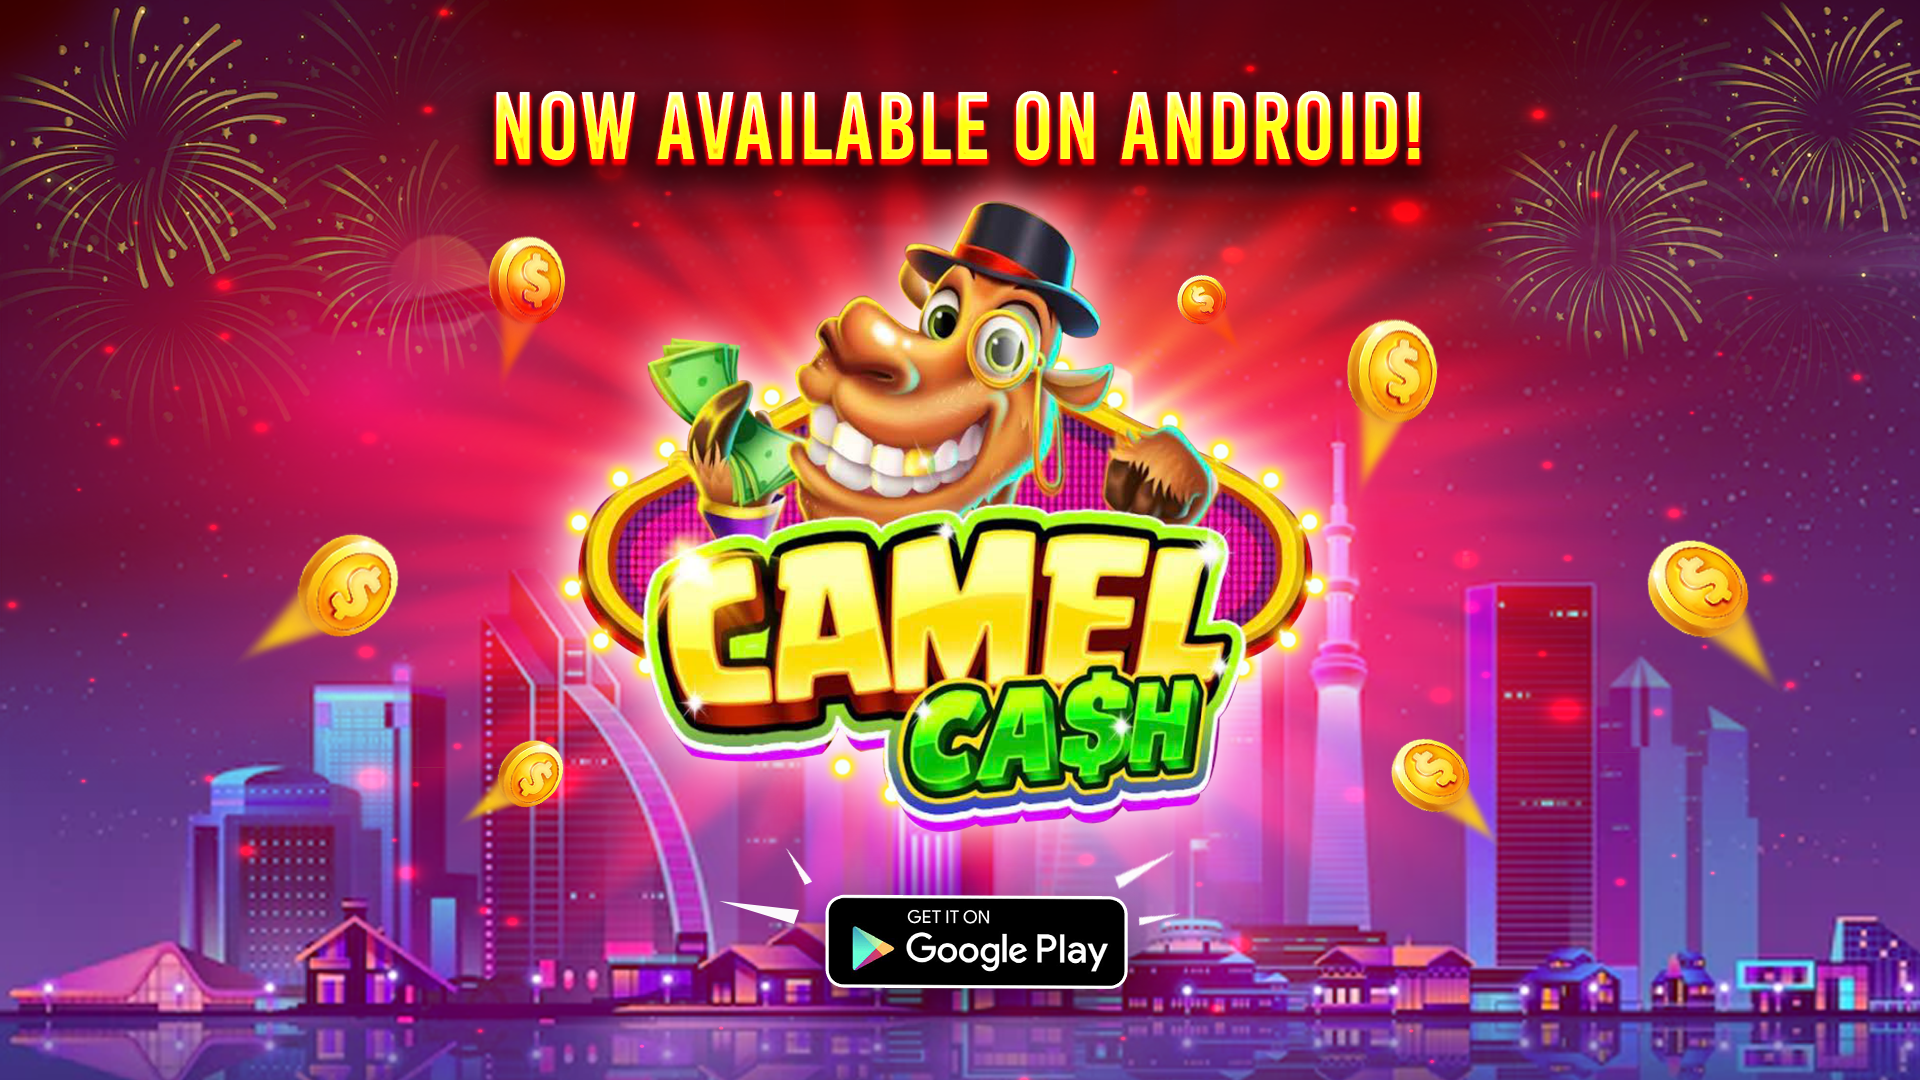 Camel cash casino